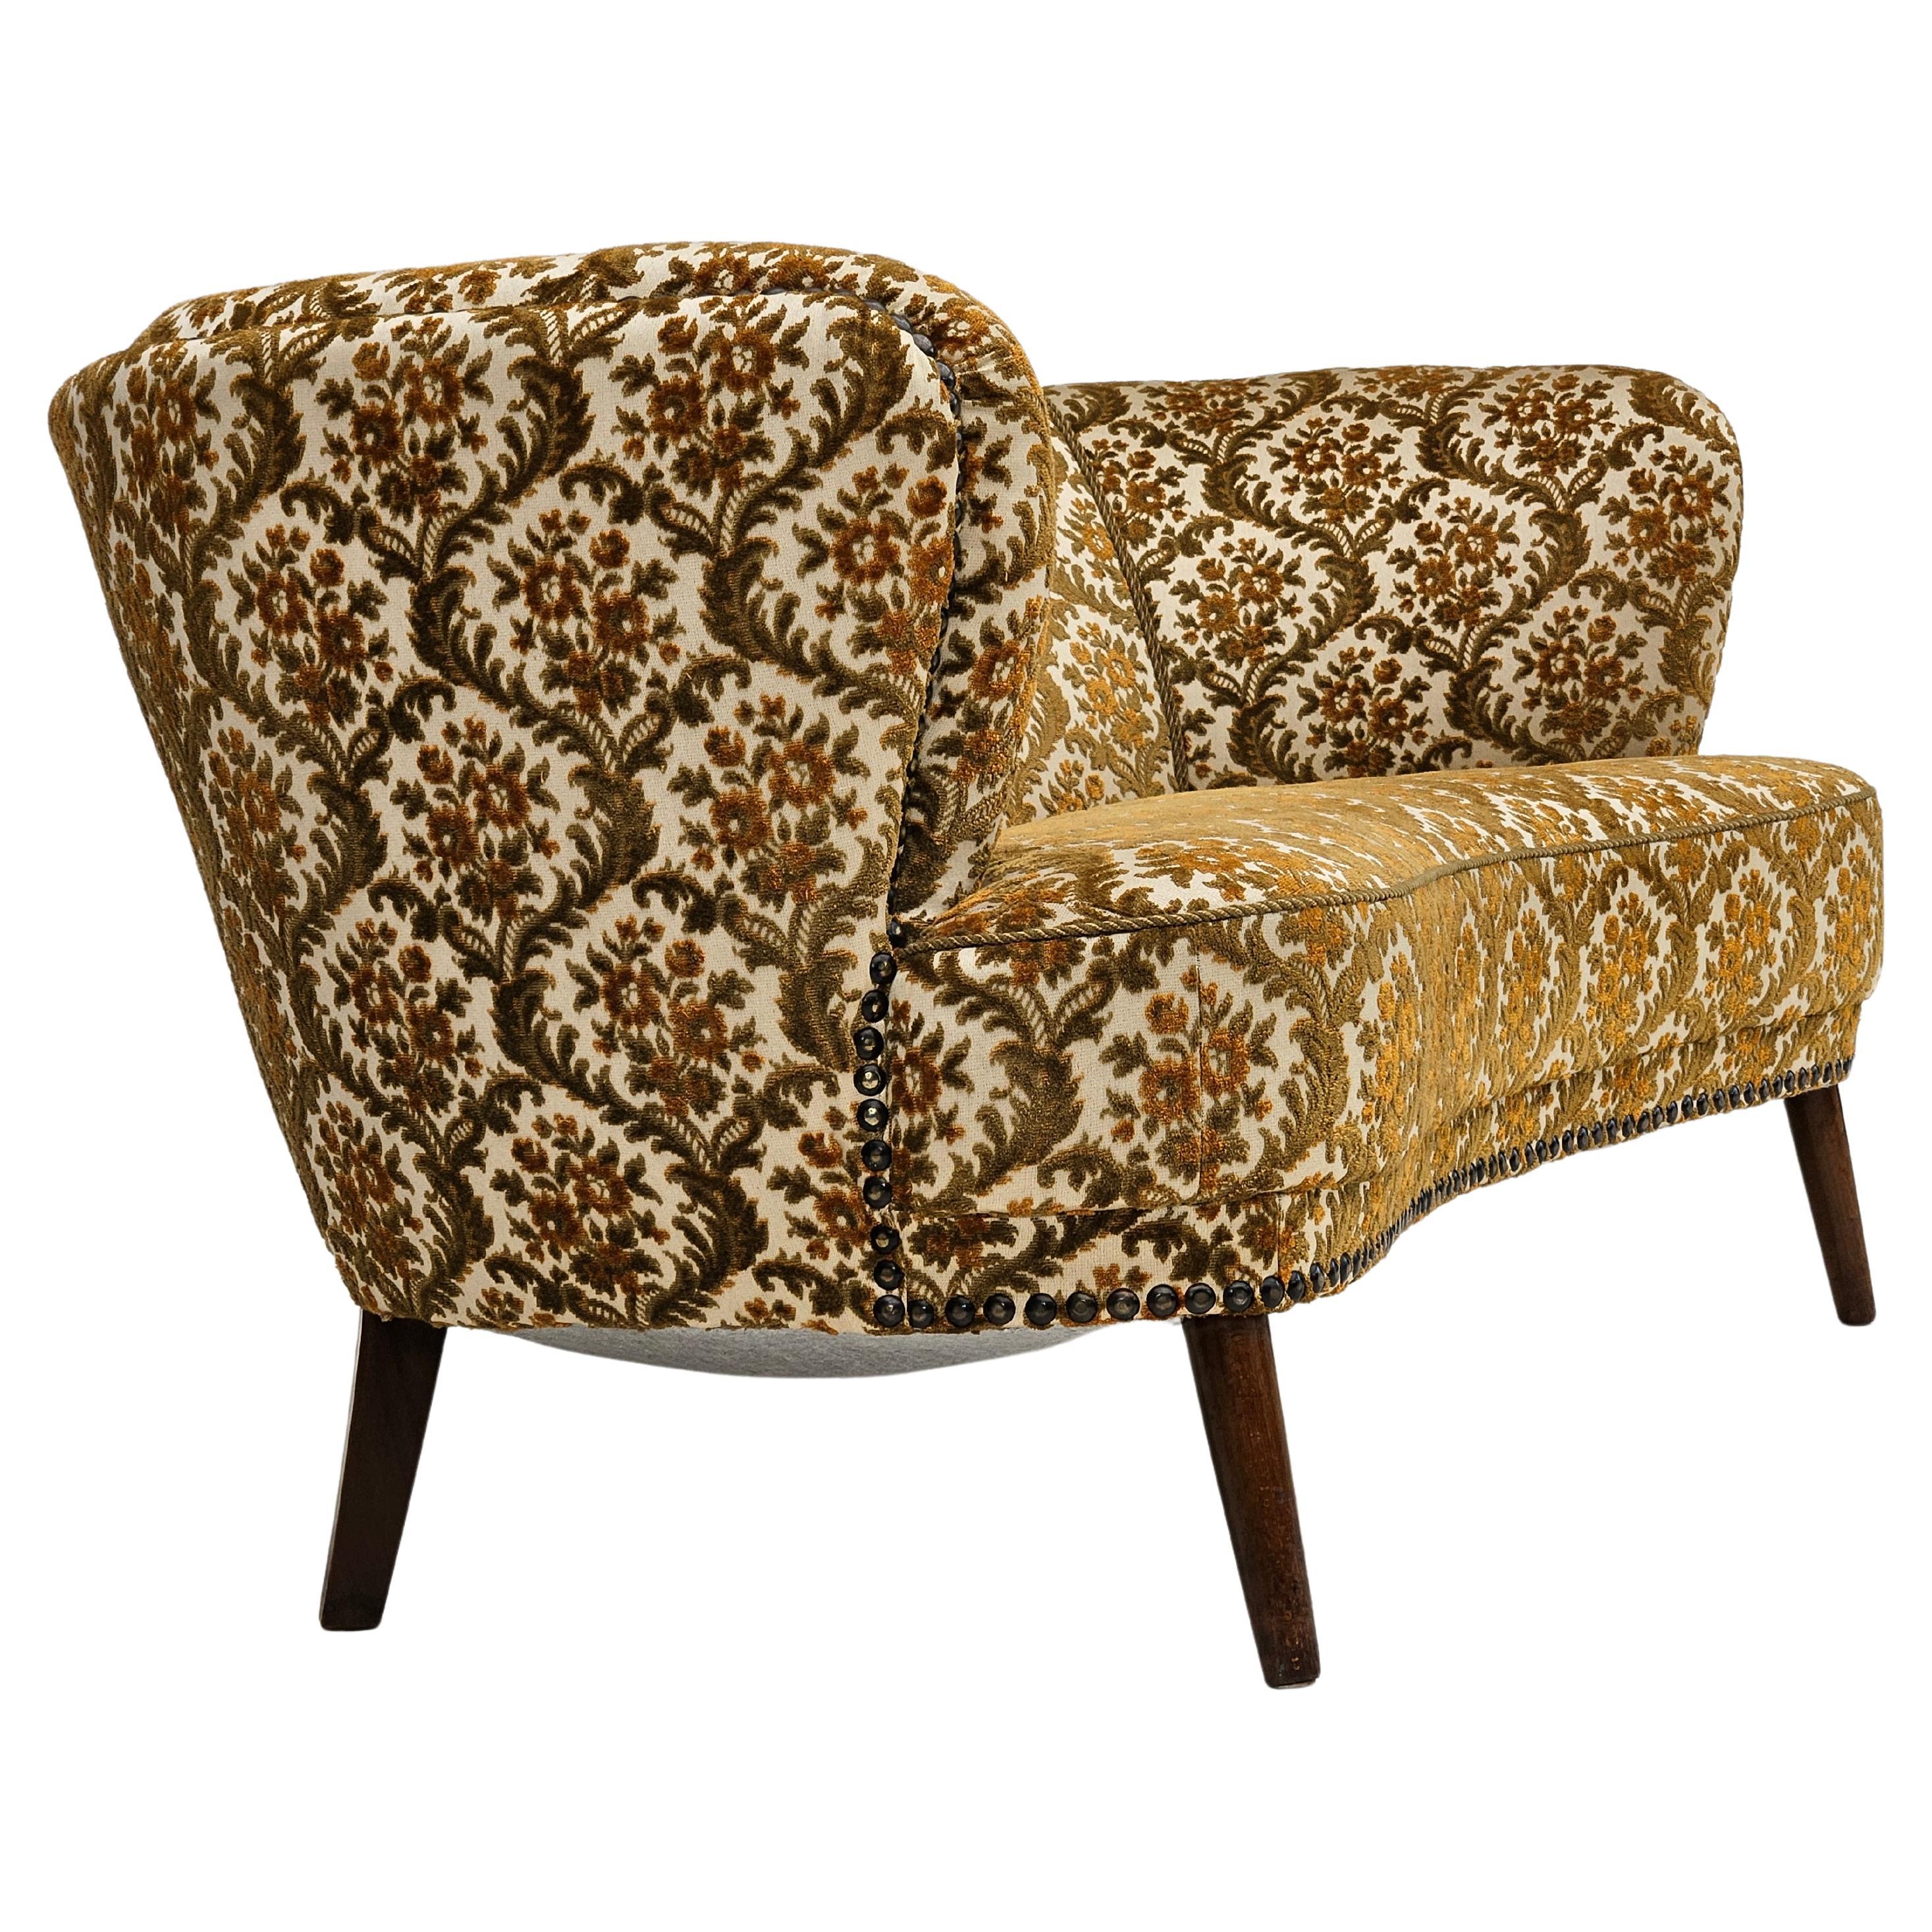 1960er Jahre, dänisches 2-Sitzer-Sofa "Banana", Originalzustand, Möbelstoff.